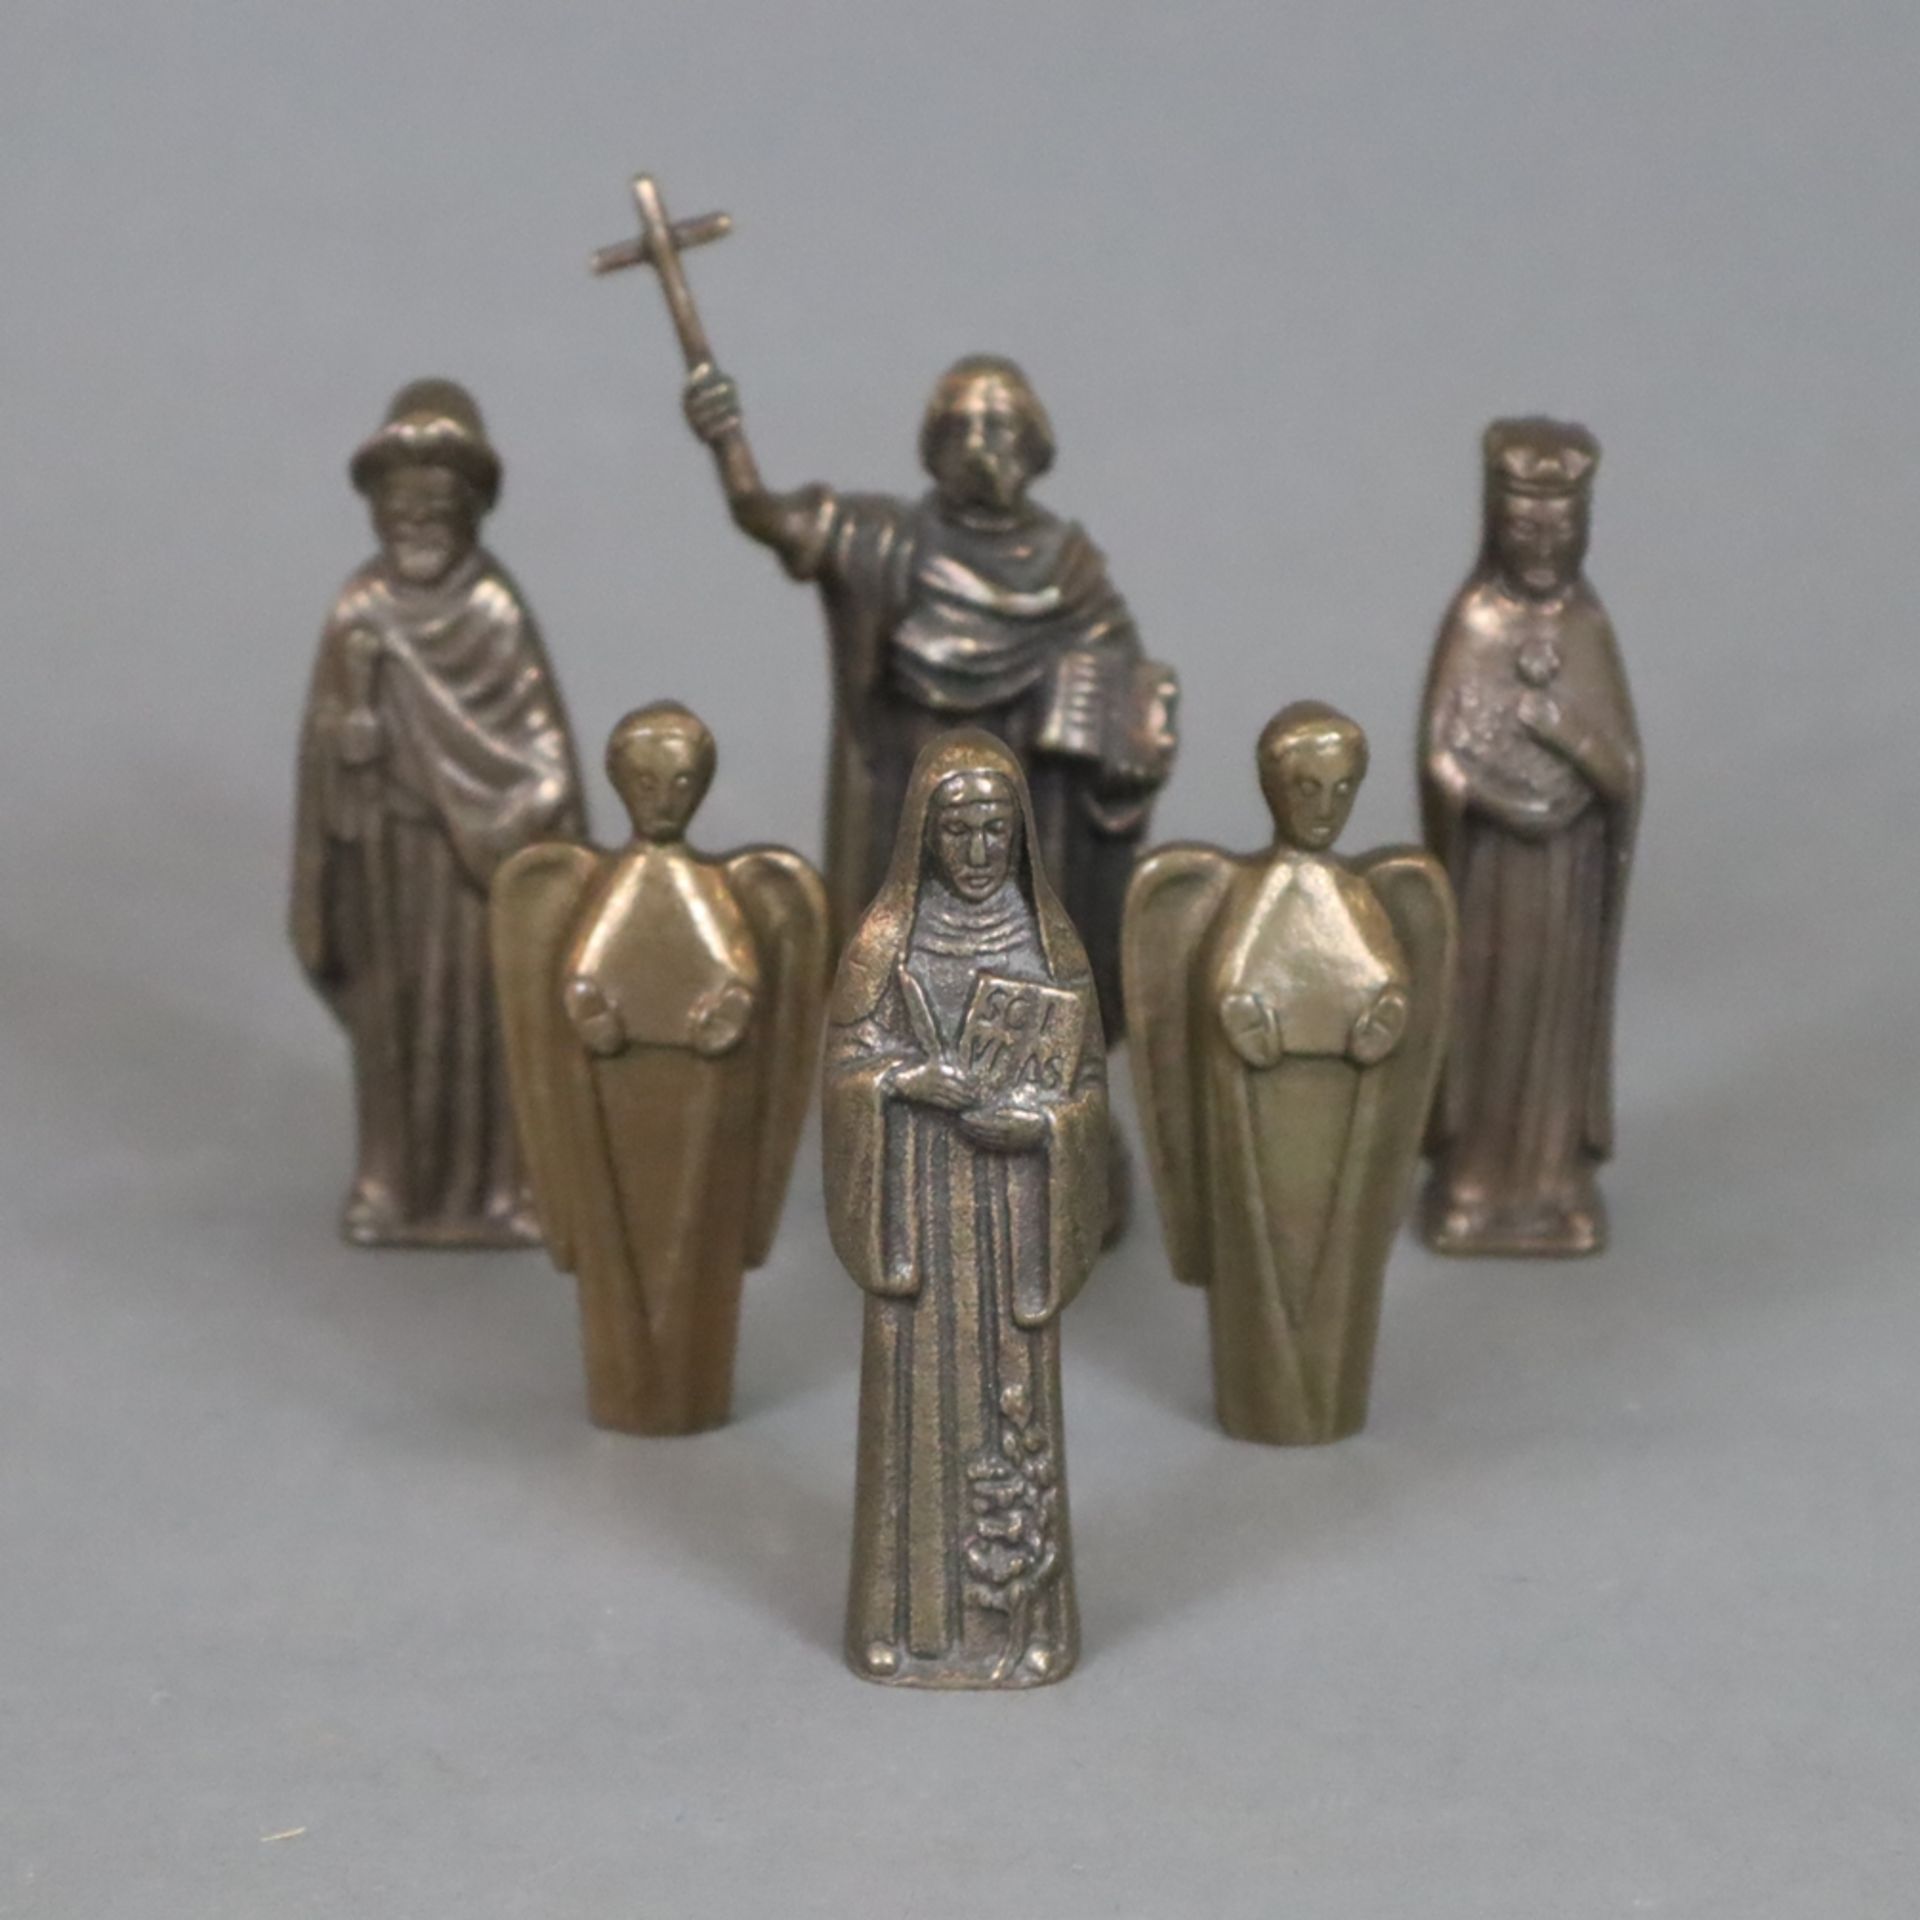 Sechs Miniaturfiguren - 20.Jh., Bronze, braun patiniert, 1x Apostel Paulus, 3x Heiligenfiguren, rüc